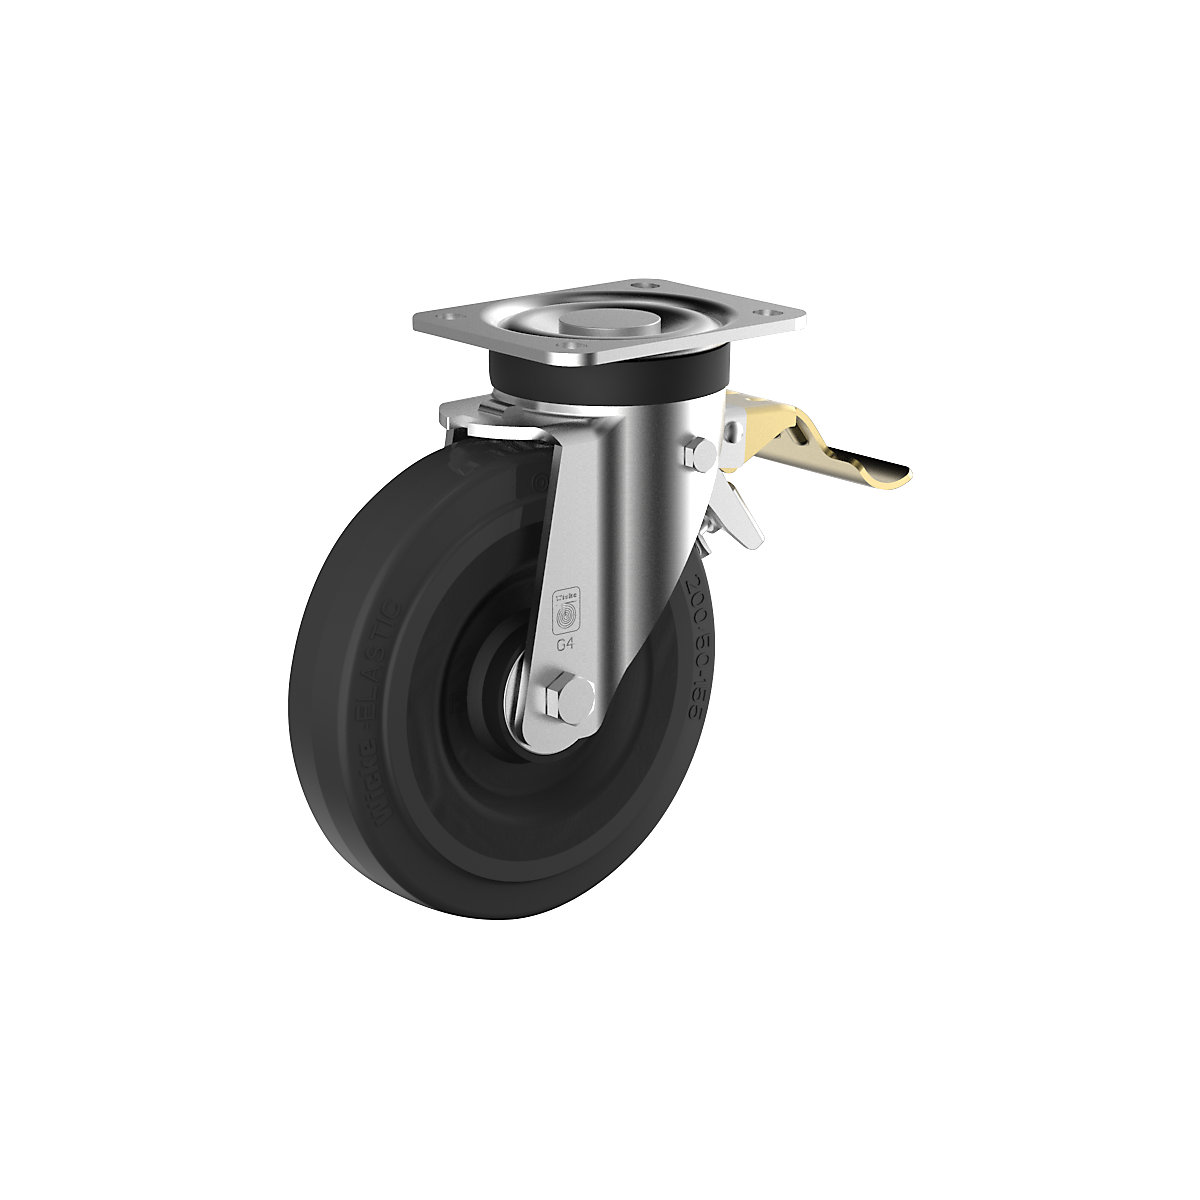 Elastični kotač od pune gume na čeličnom naplatku – Wicke, Ø x širina kotača 200 x 50 mm, okretni kotač s dvostrukom blokadom-3